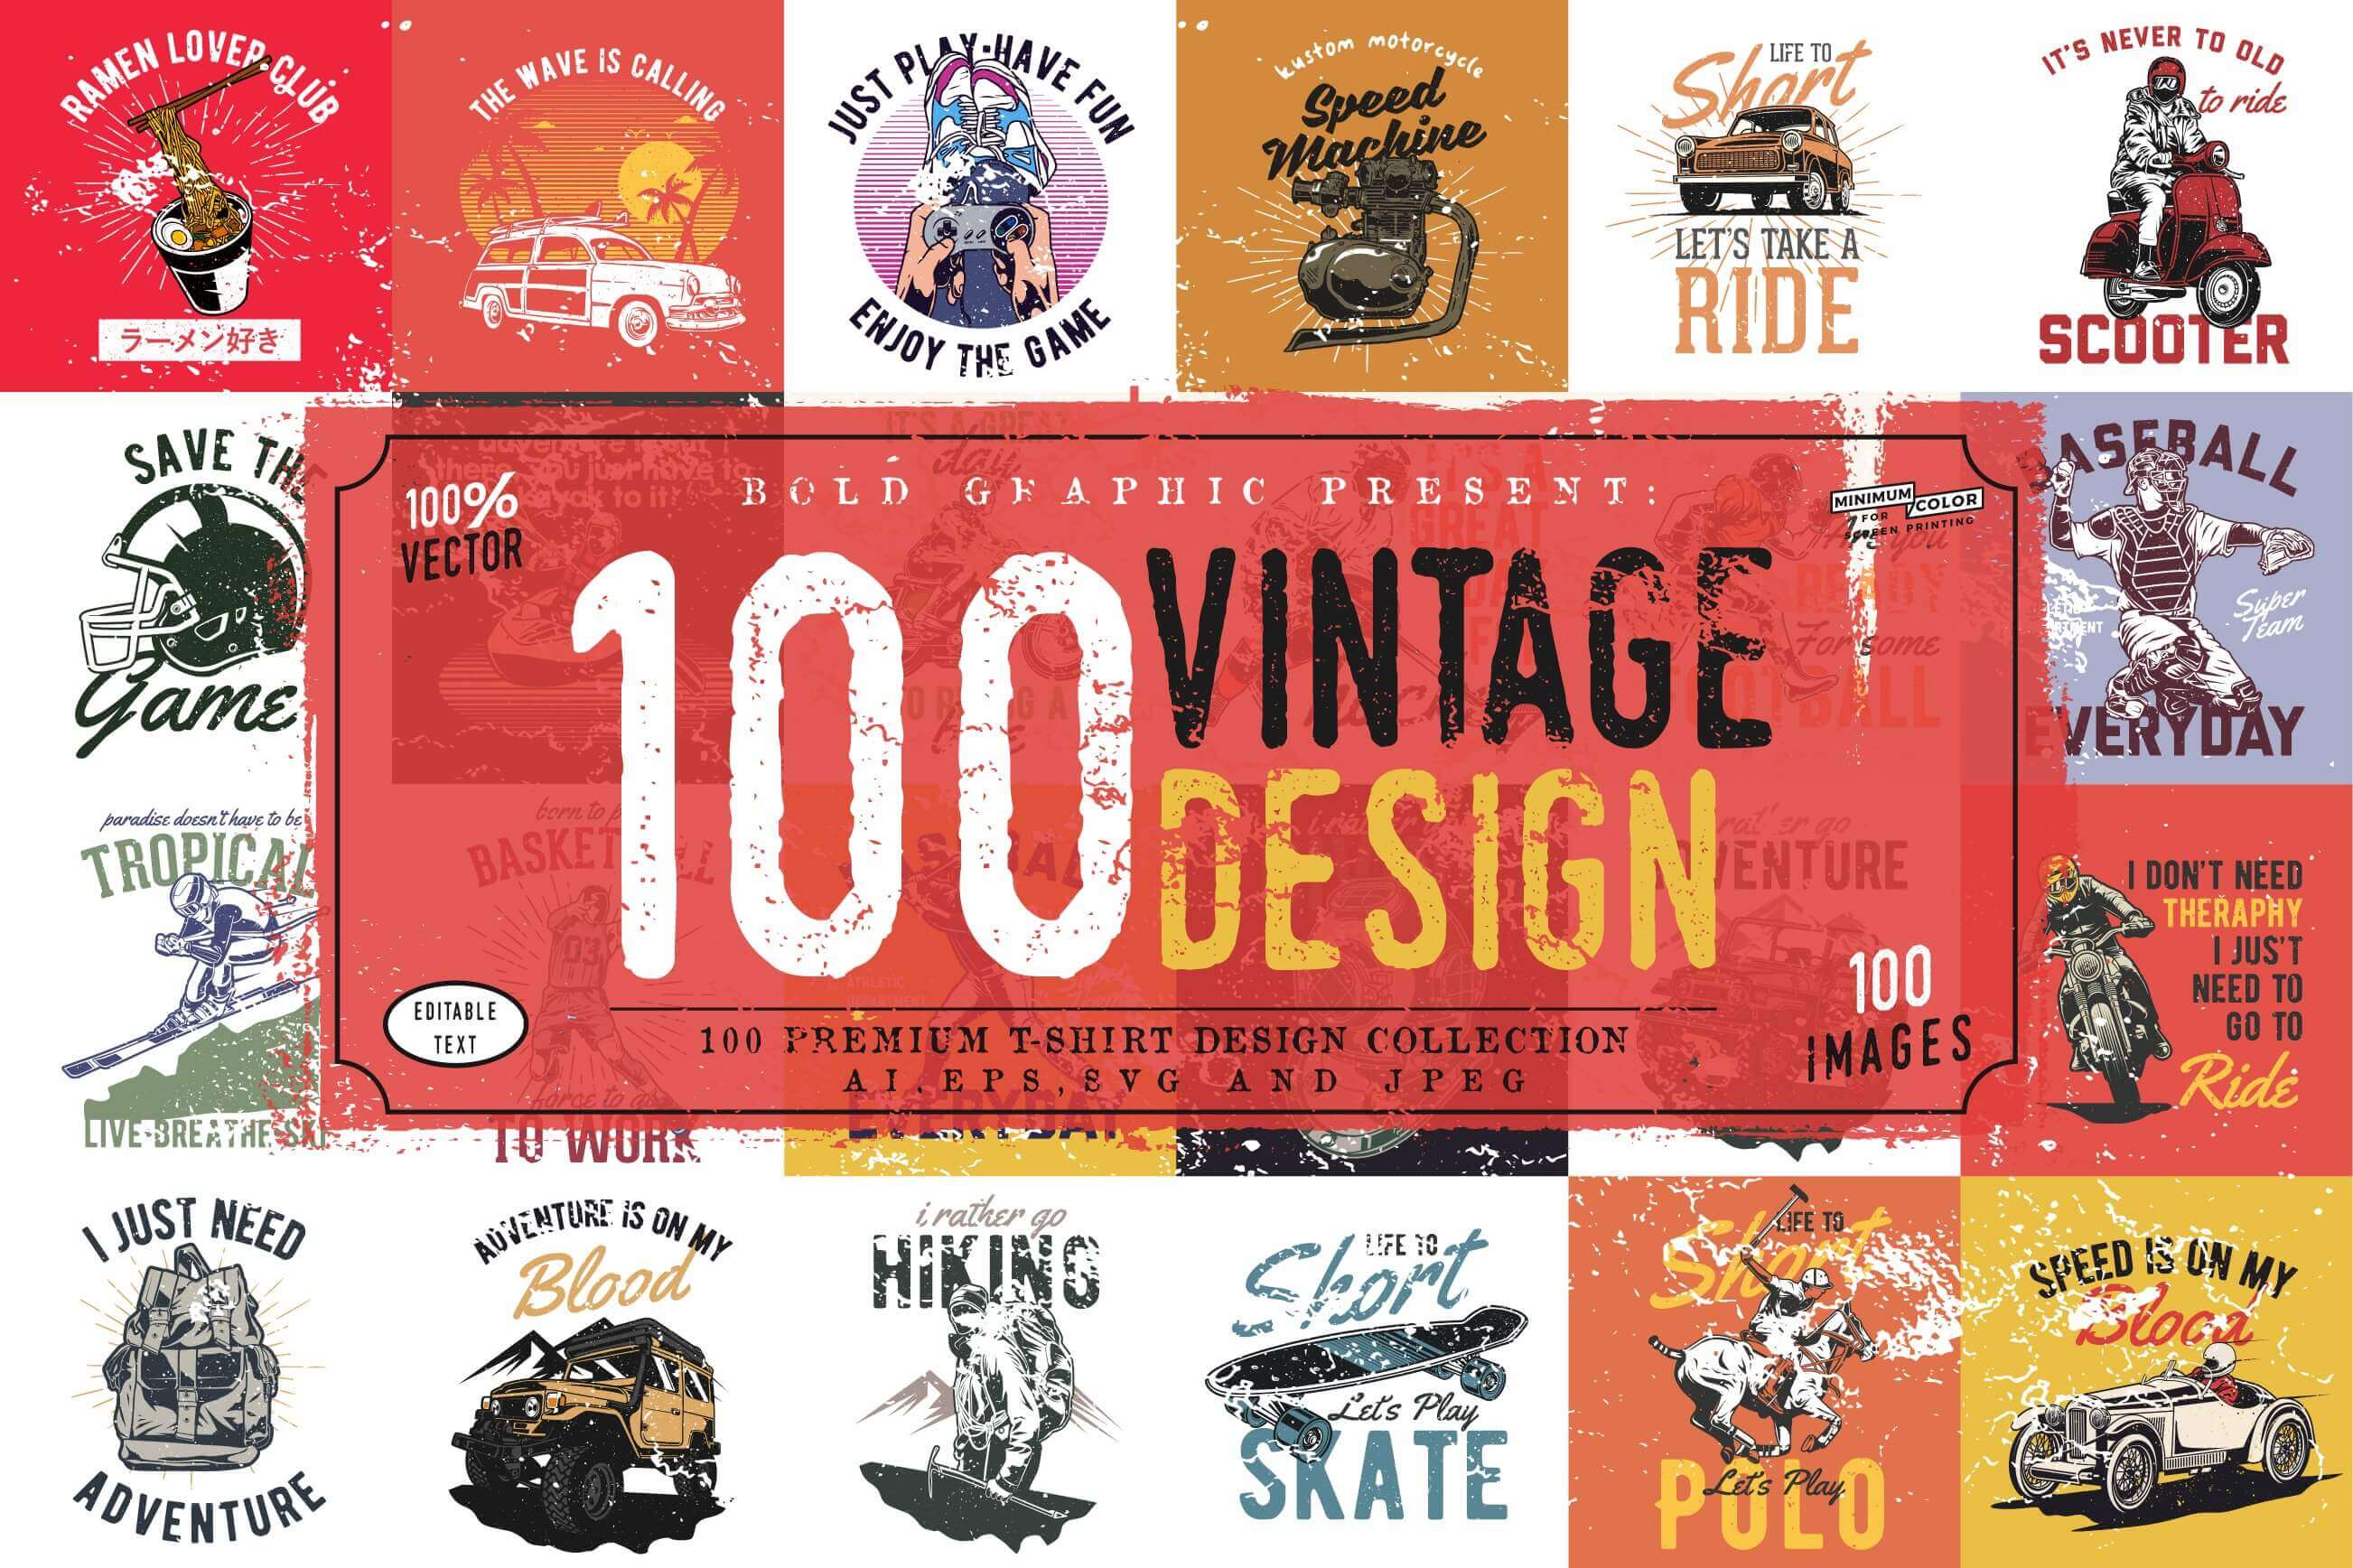 Large logo 100% vector, 100 Vintage Design, 100 Images.